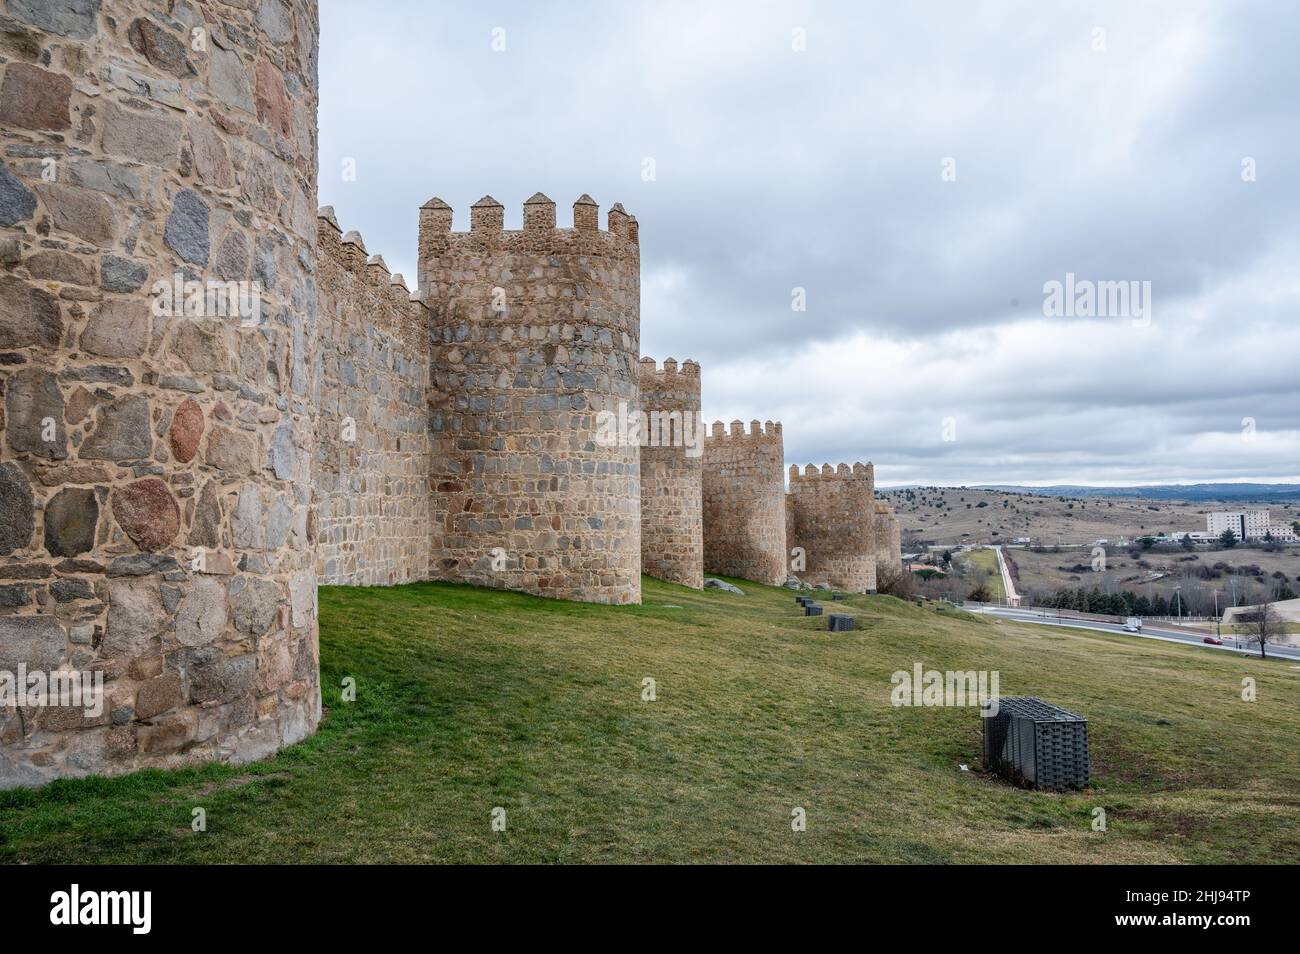 Stadtmauer von Avila in Castilla y Leon, Spanien. Mauer aus dem Ende des 11th. Jahrhunderts. UNESCO-Weltkulturerbe Stockfoto